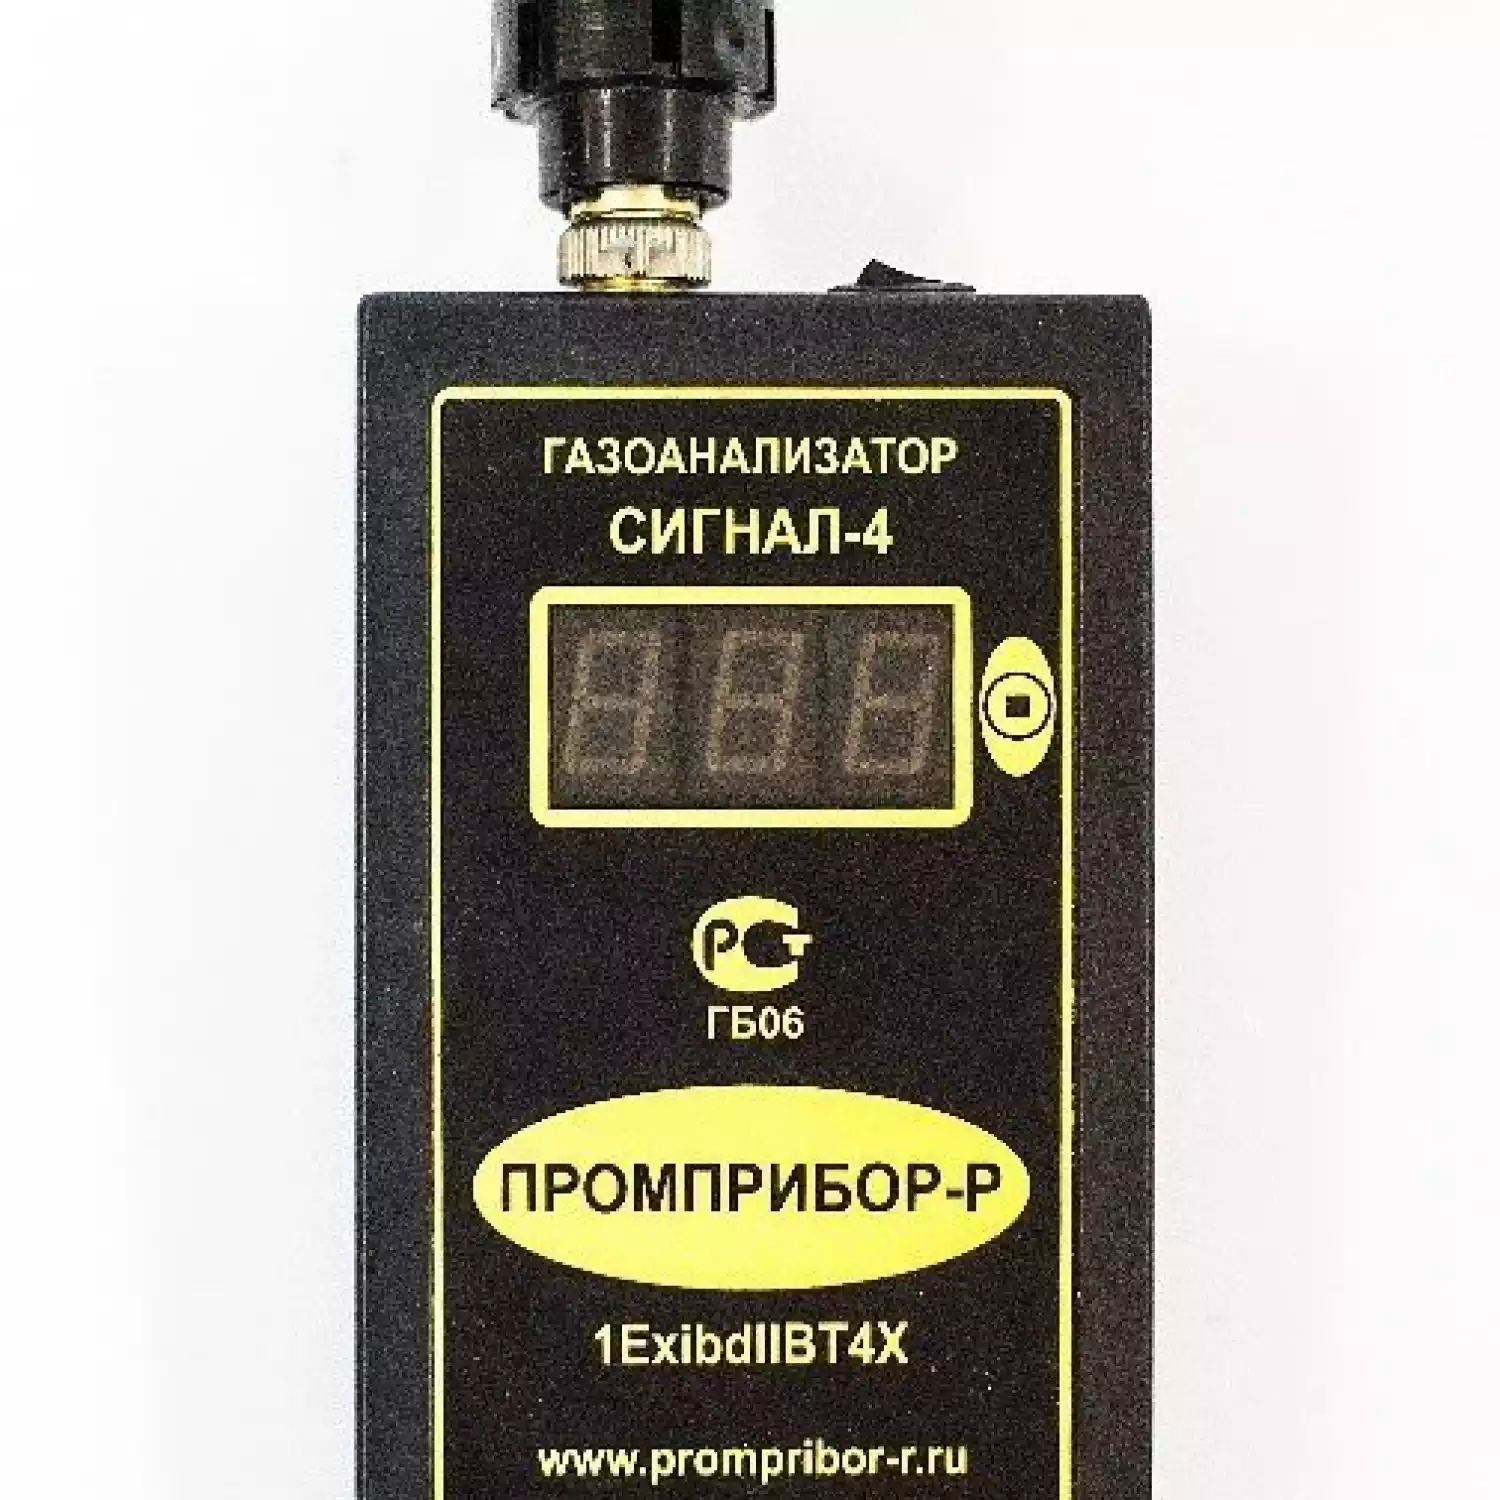 Персональный газоанализатор фреонов Сигнал-4 (Термокаталитический) - 1